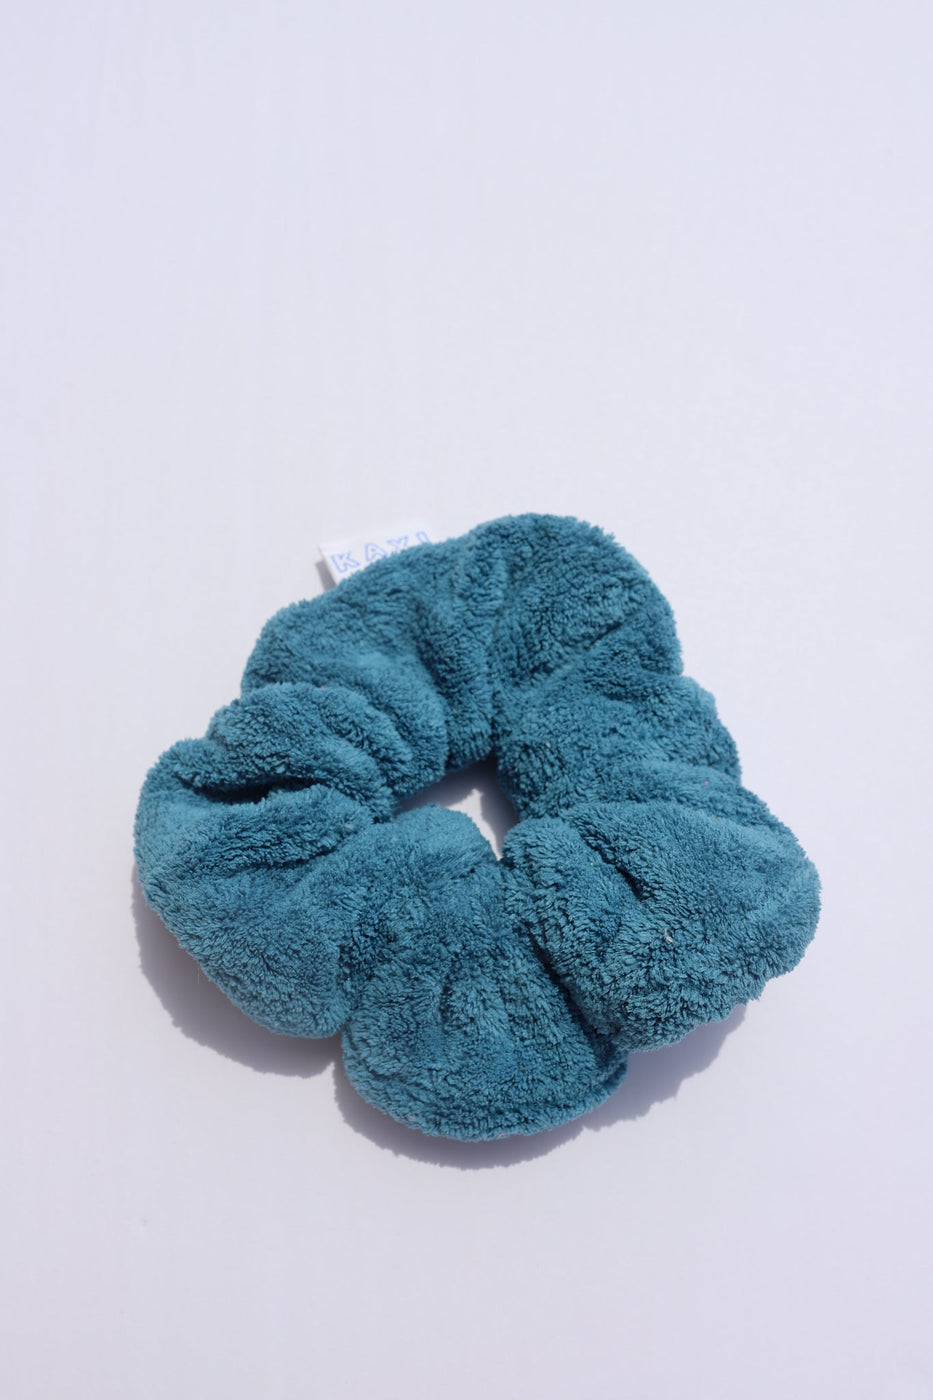 a blue hair scrunchie on a white surface